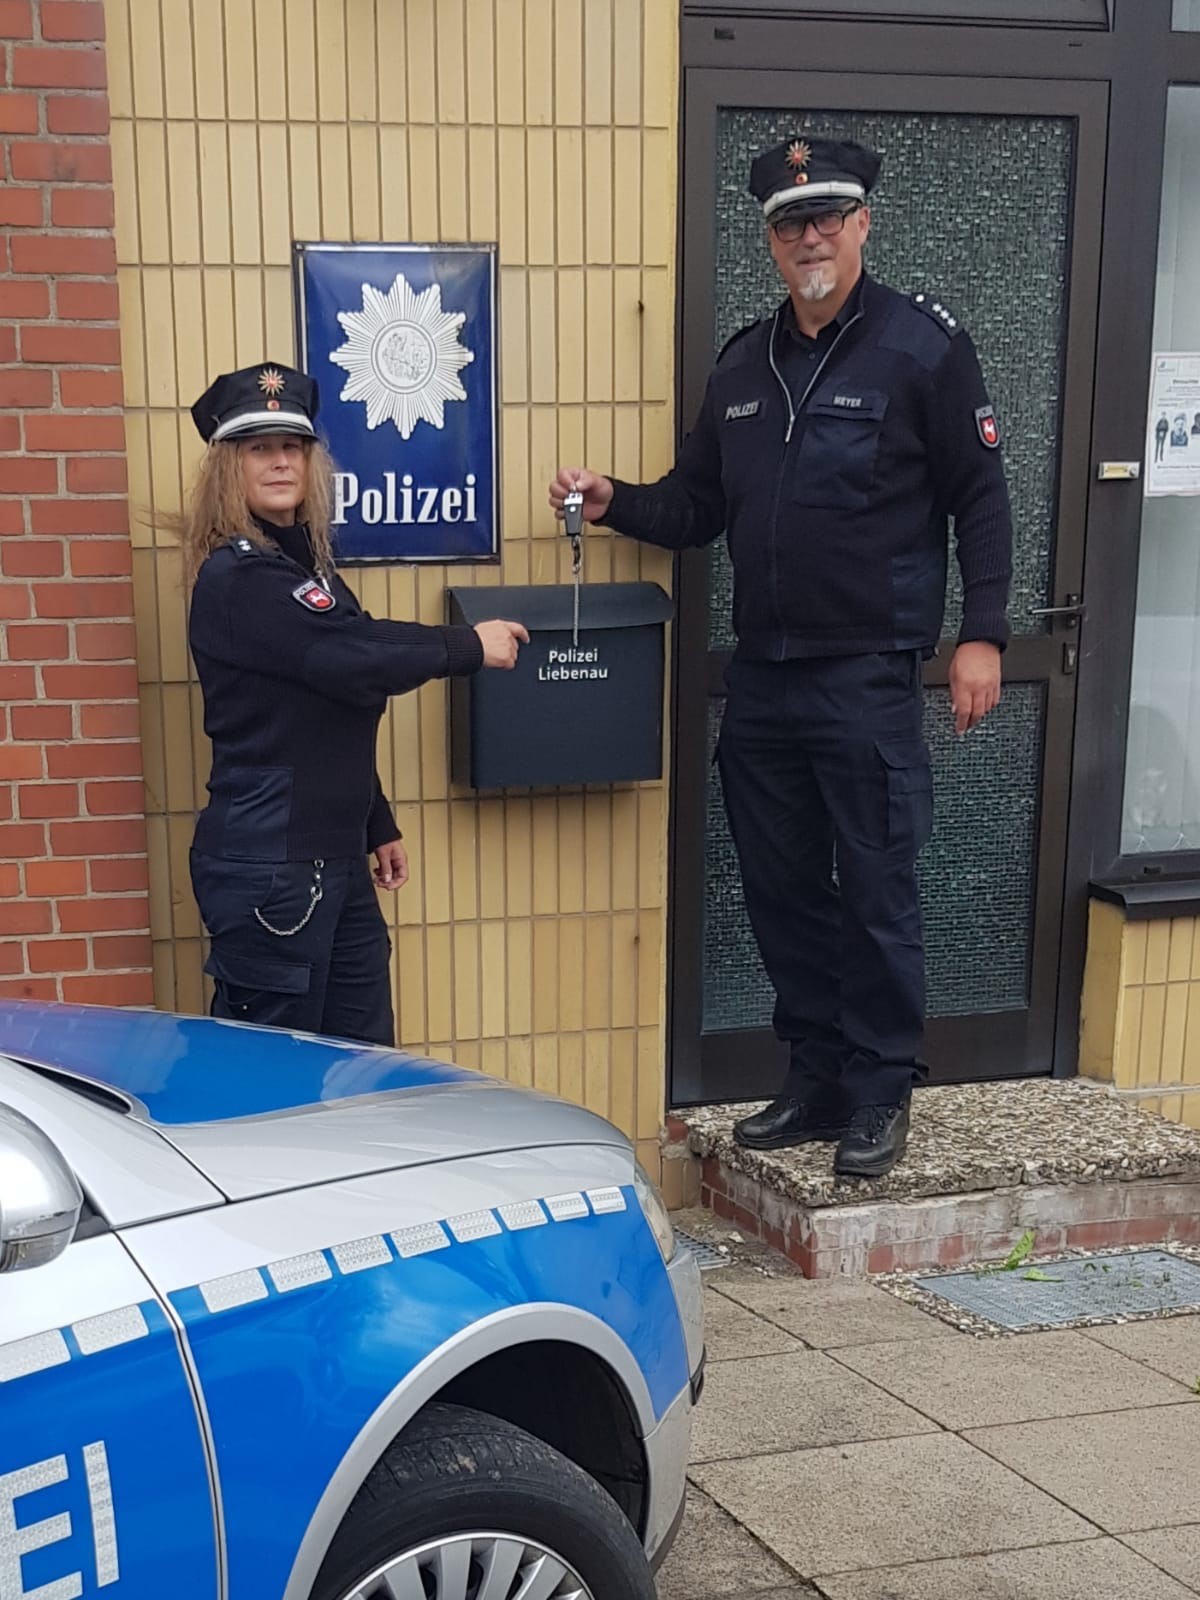 POL-LWL: Polizei sucht Eigentümer von Kettensäge und Kanister